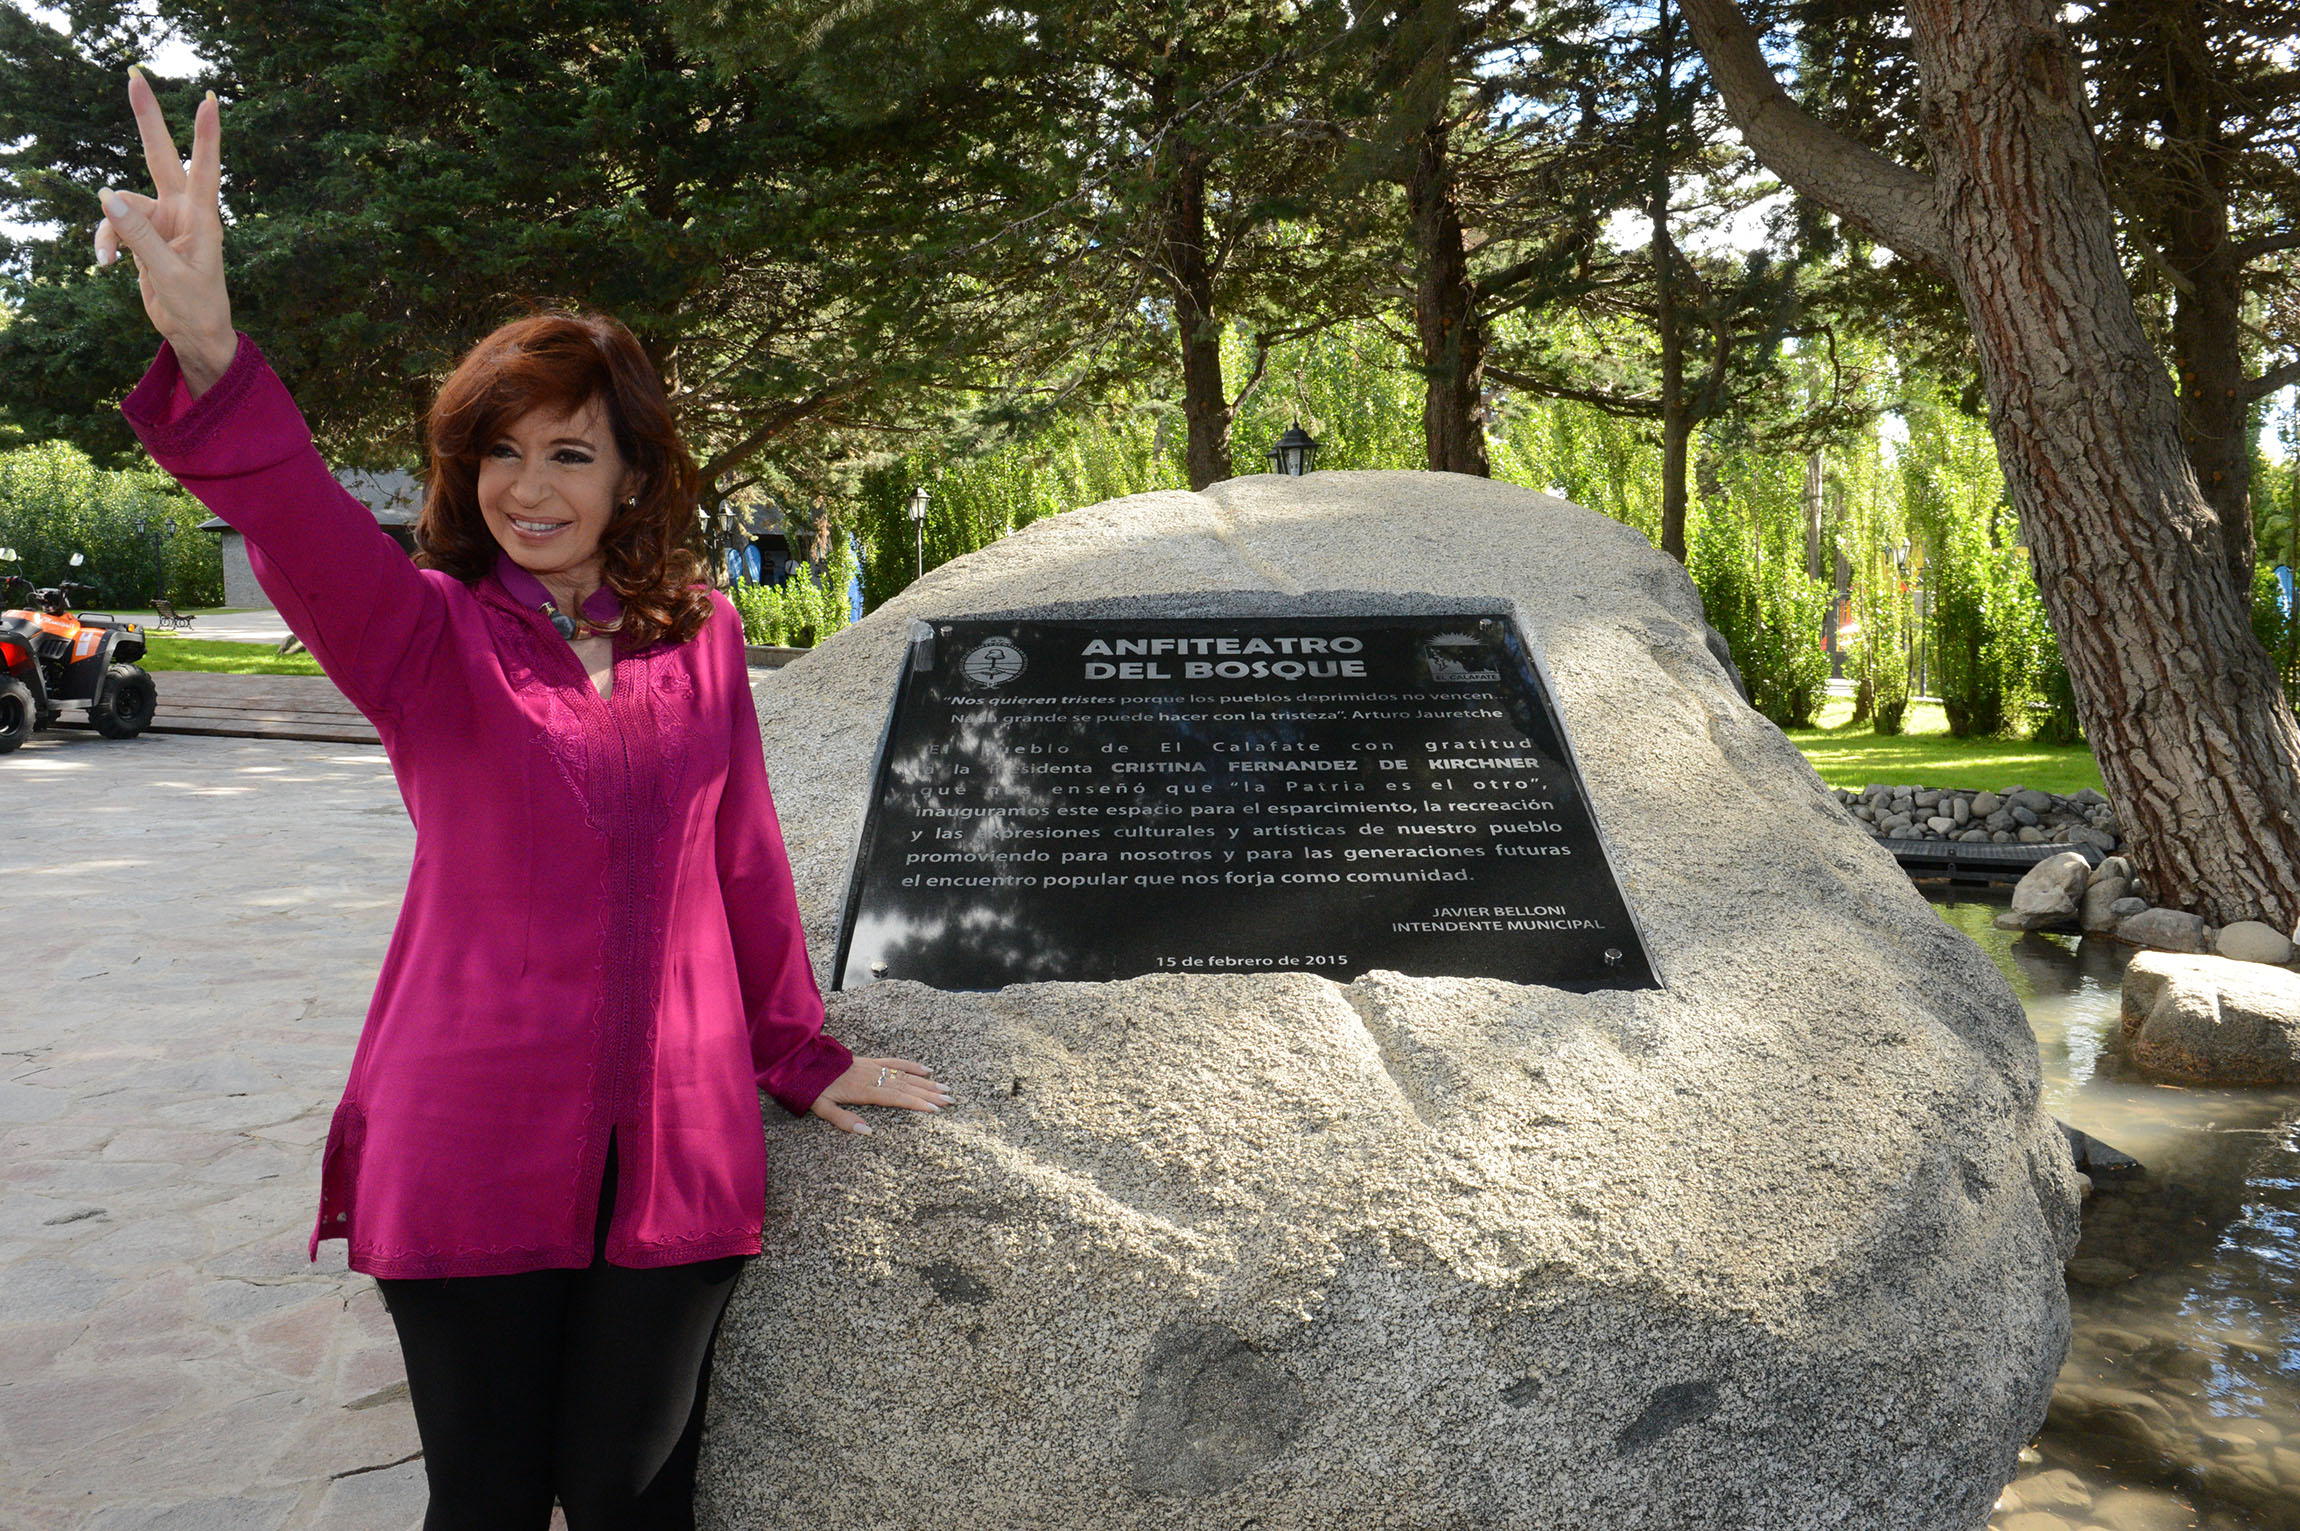 La Presidenta inauguró el Parque Anfiteatro del Bosque de El Calafate.